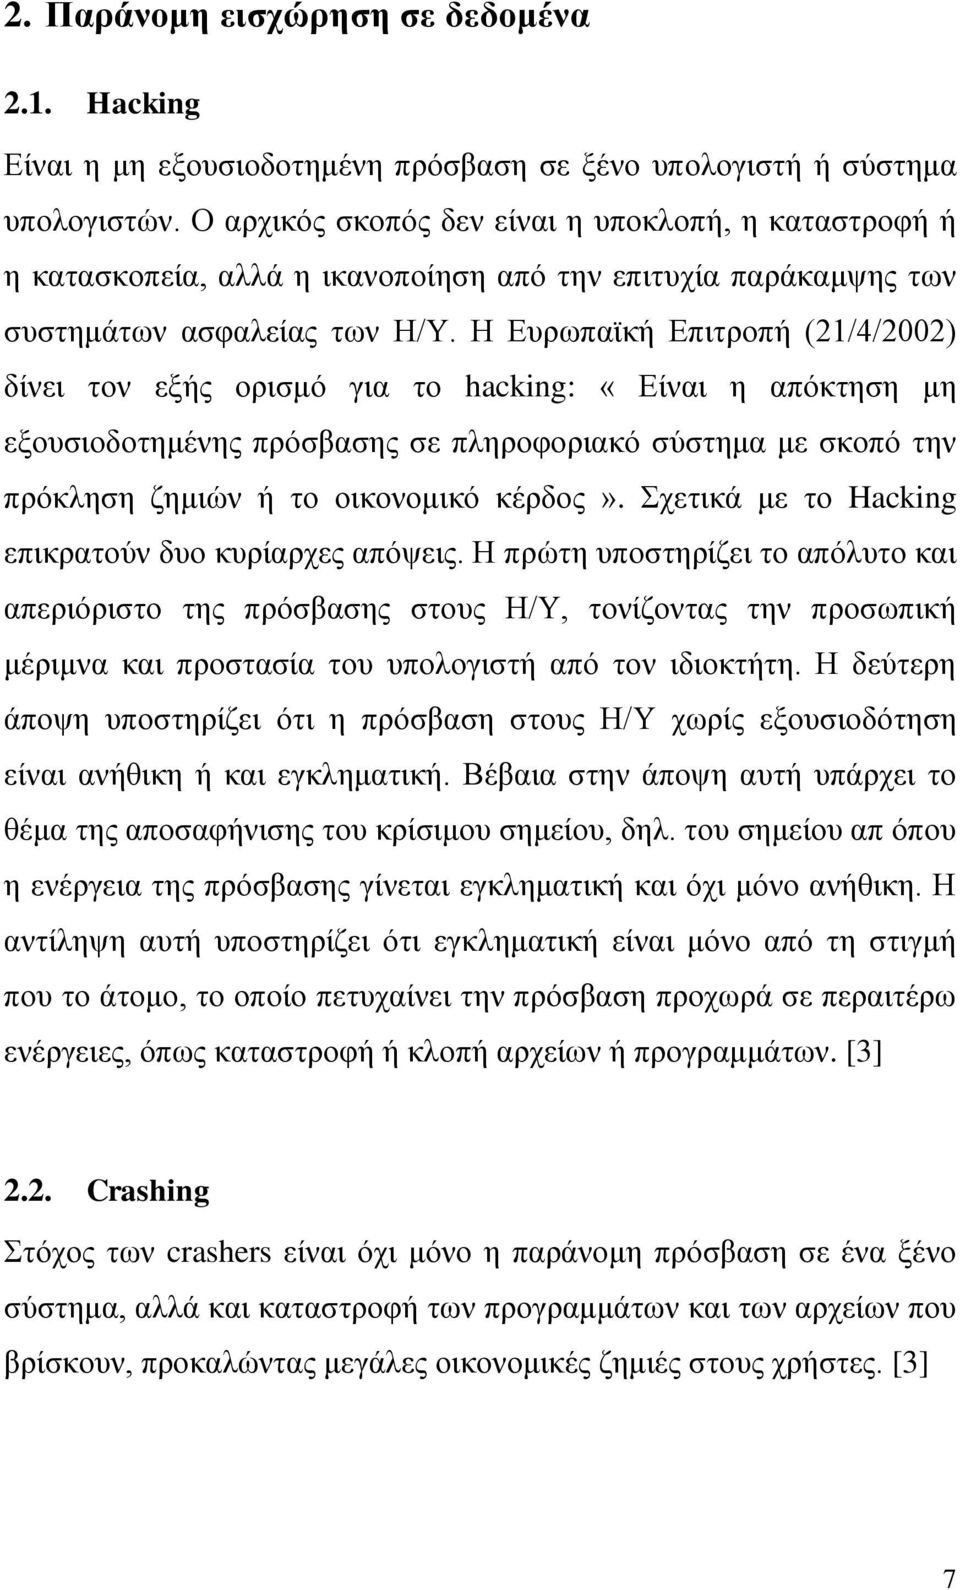 Η Ευρωπαϊκή Επιτροπή (21/4/2002) δίνει τον εξής ορισμό για το hacking: «Είναι η απόκτηση μη εξουσιοδοτημένης πρόσβασης σε πληροφοριακό σύστημα με σκοπό την πρόκληση ζημιών ή το οικονομικό κέρδος».